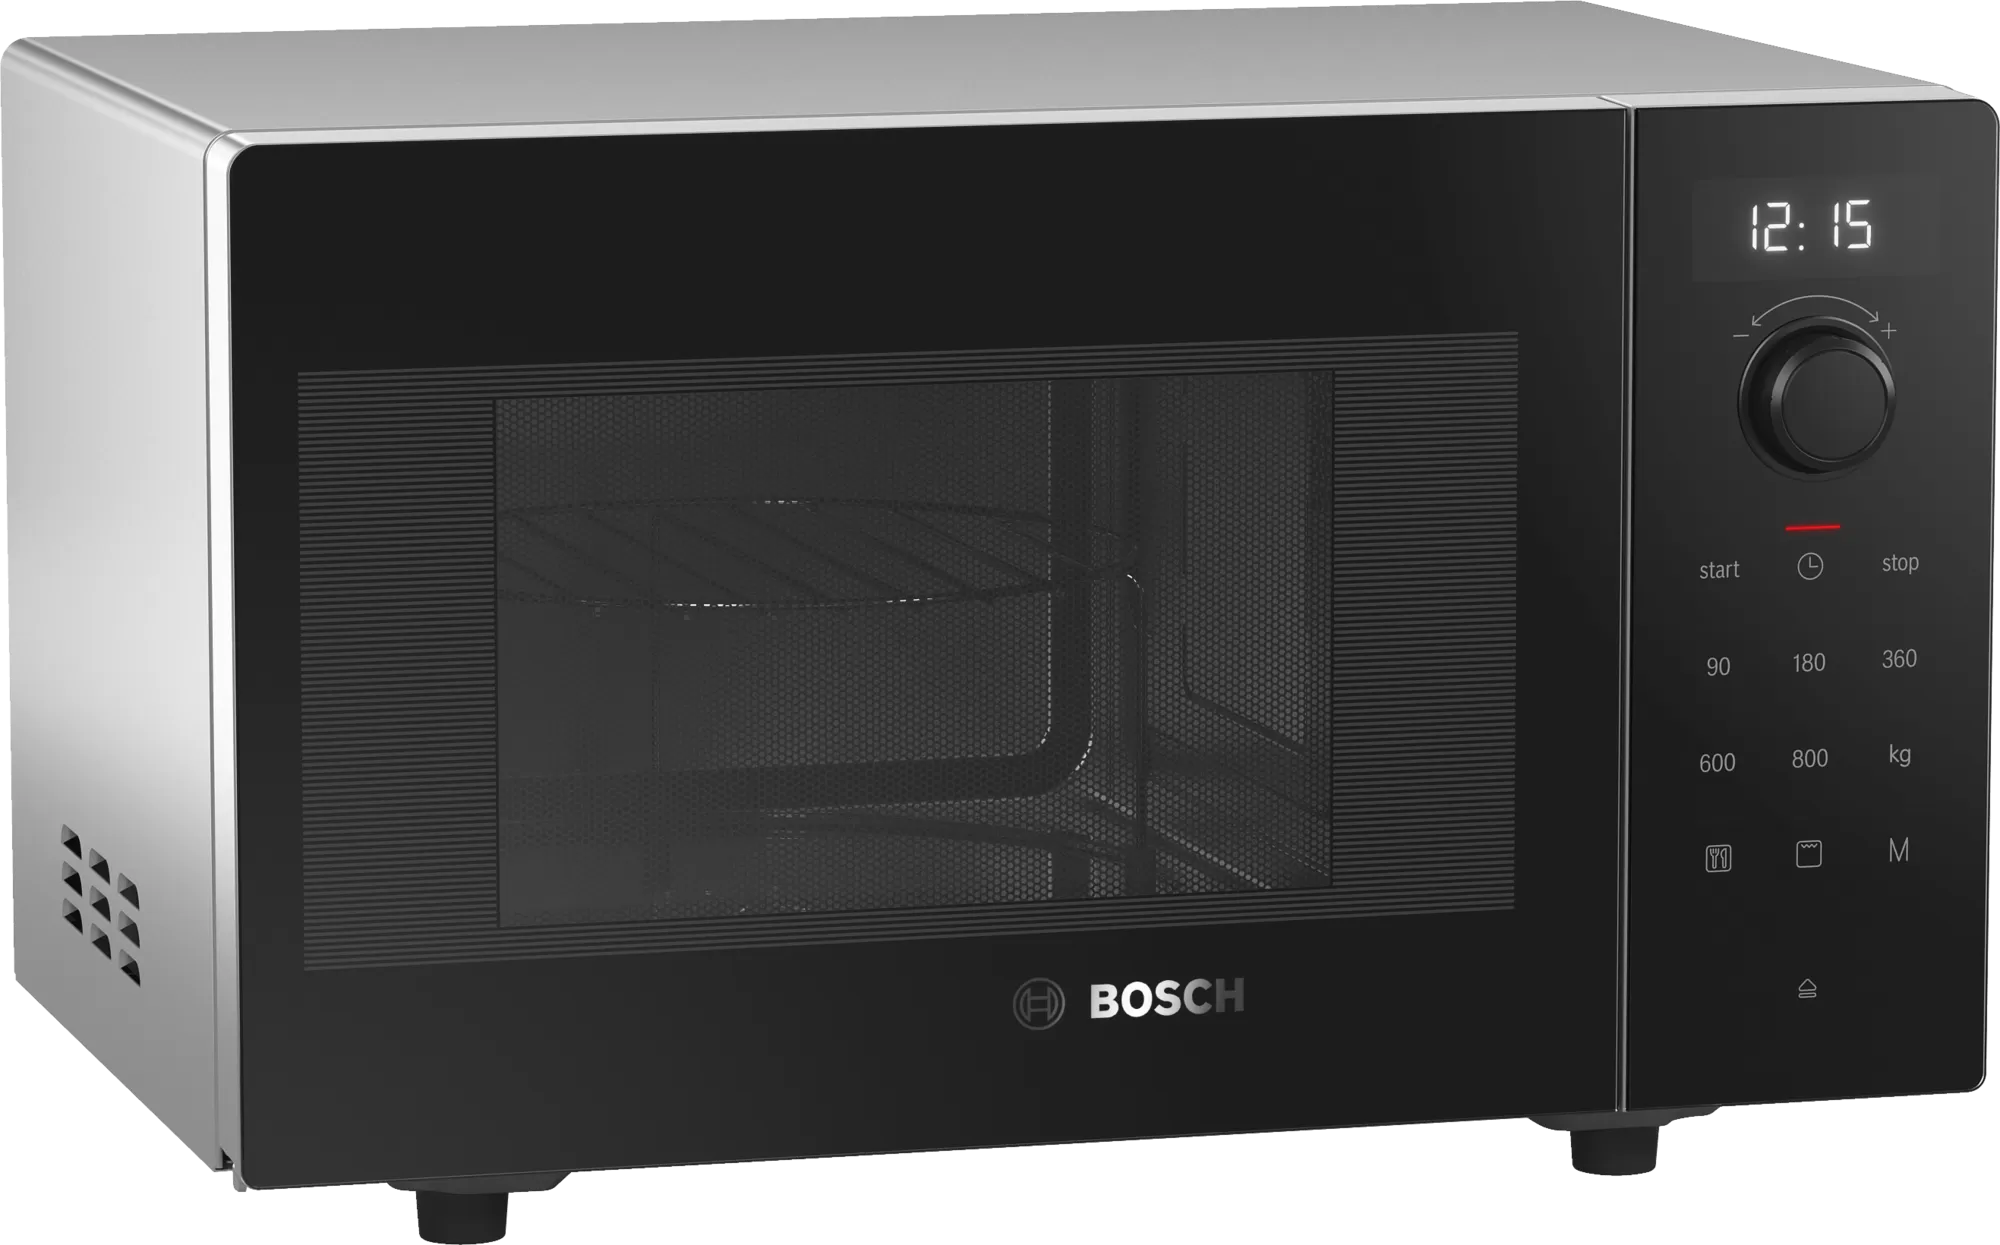 Микроволновая печь черная 20 л. Микроволновая печь Bosch ffm553mb0. СВЧ печь Bosch fem513mb0. Микроволновая печь бош 513. Микроволновая печь Bosch отдельностоящая.